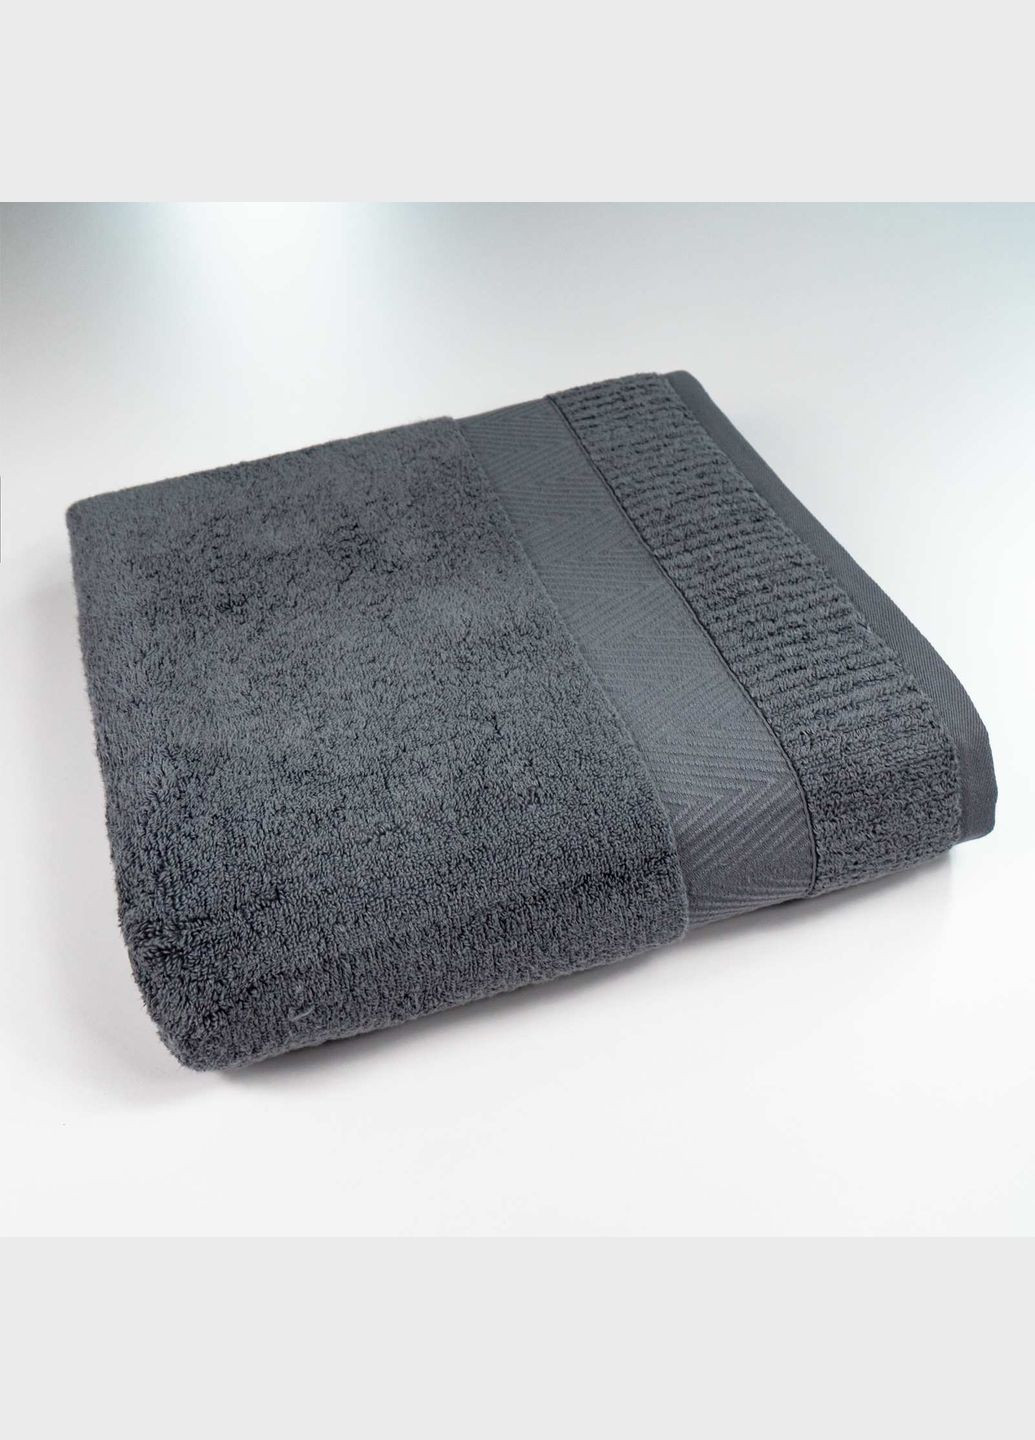 GM Textile великий банний махровий рушник 100x150см преміум якості зеро твіст бордюр 550г/м2 (сірий) сірий виробництво -